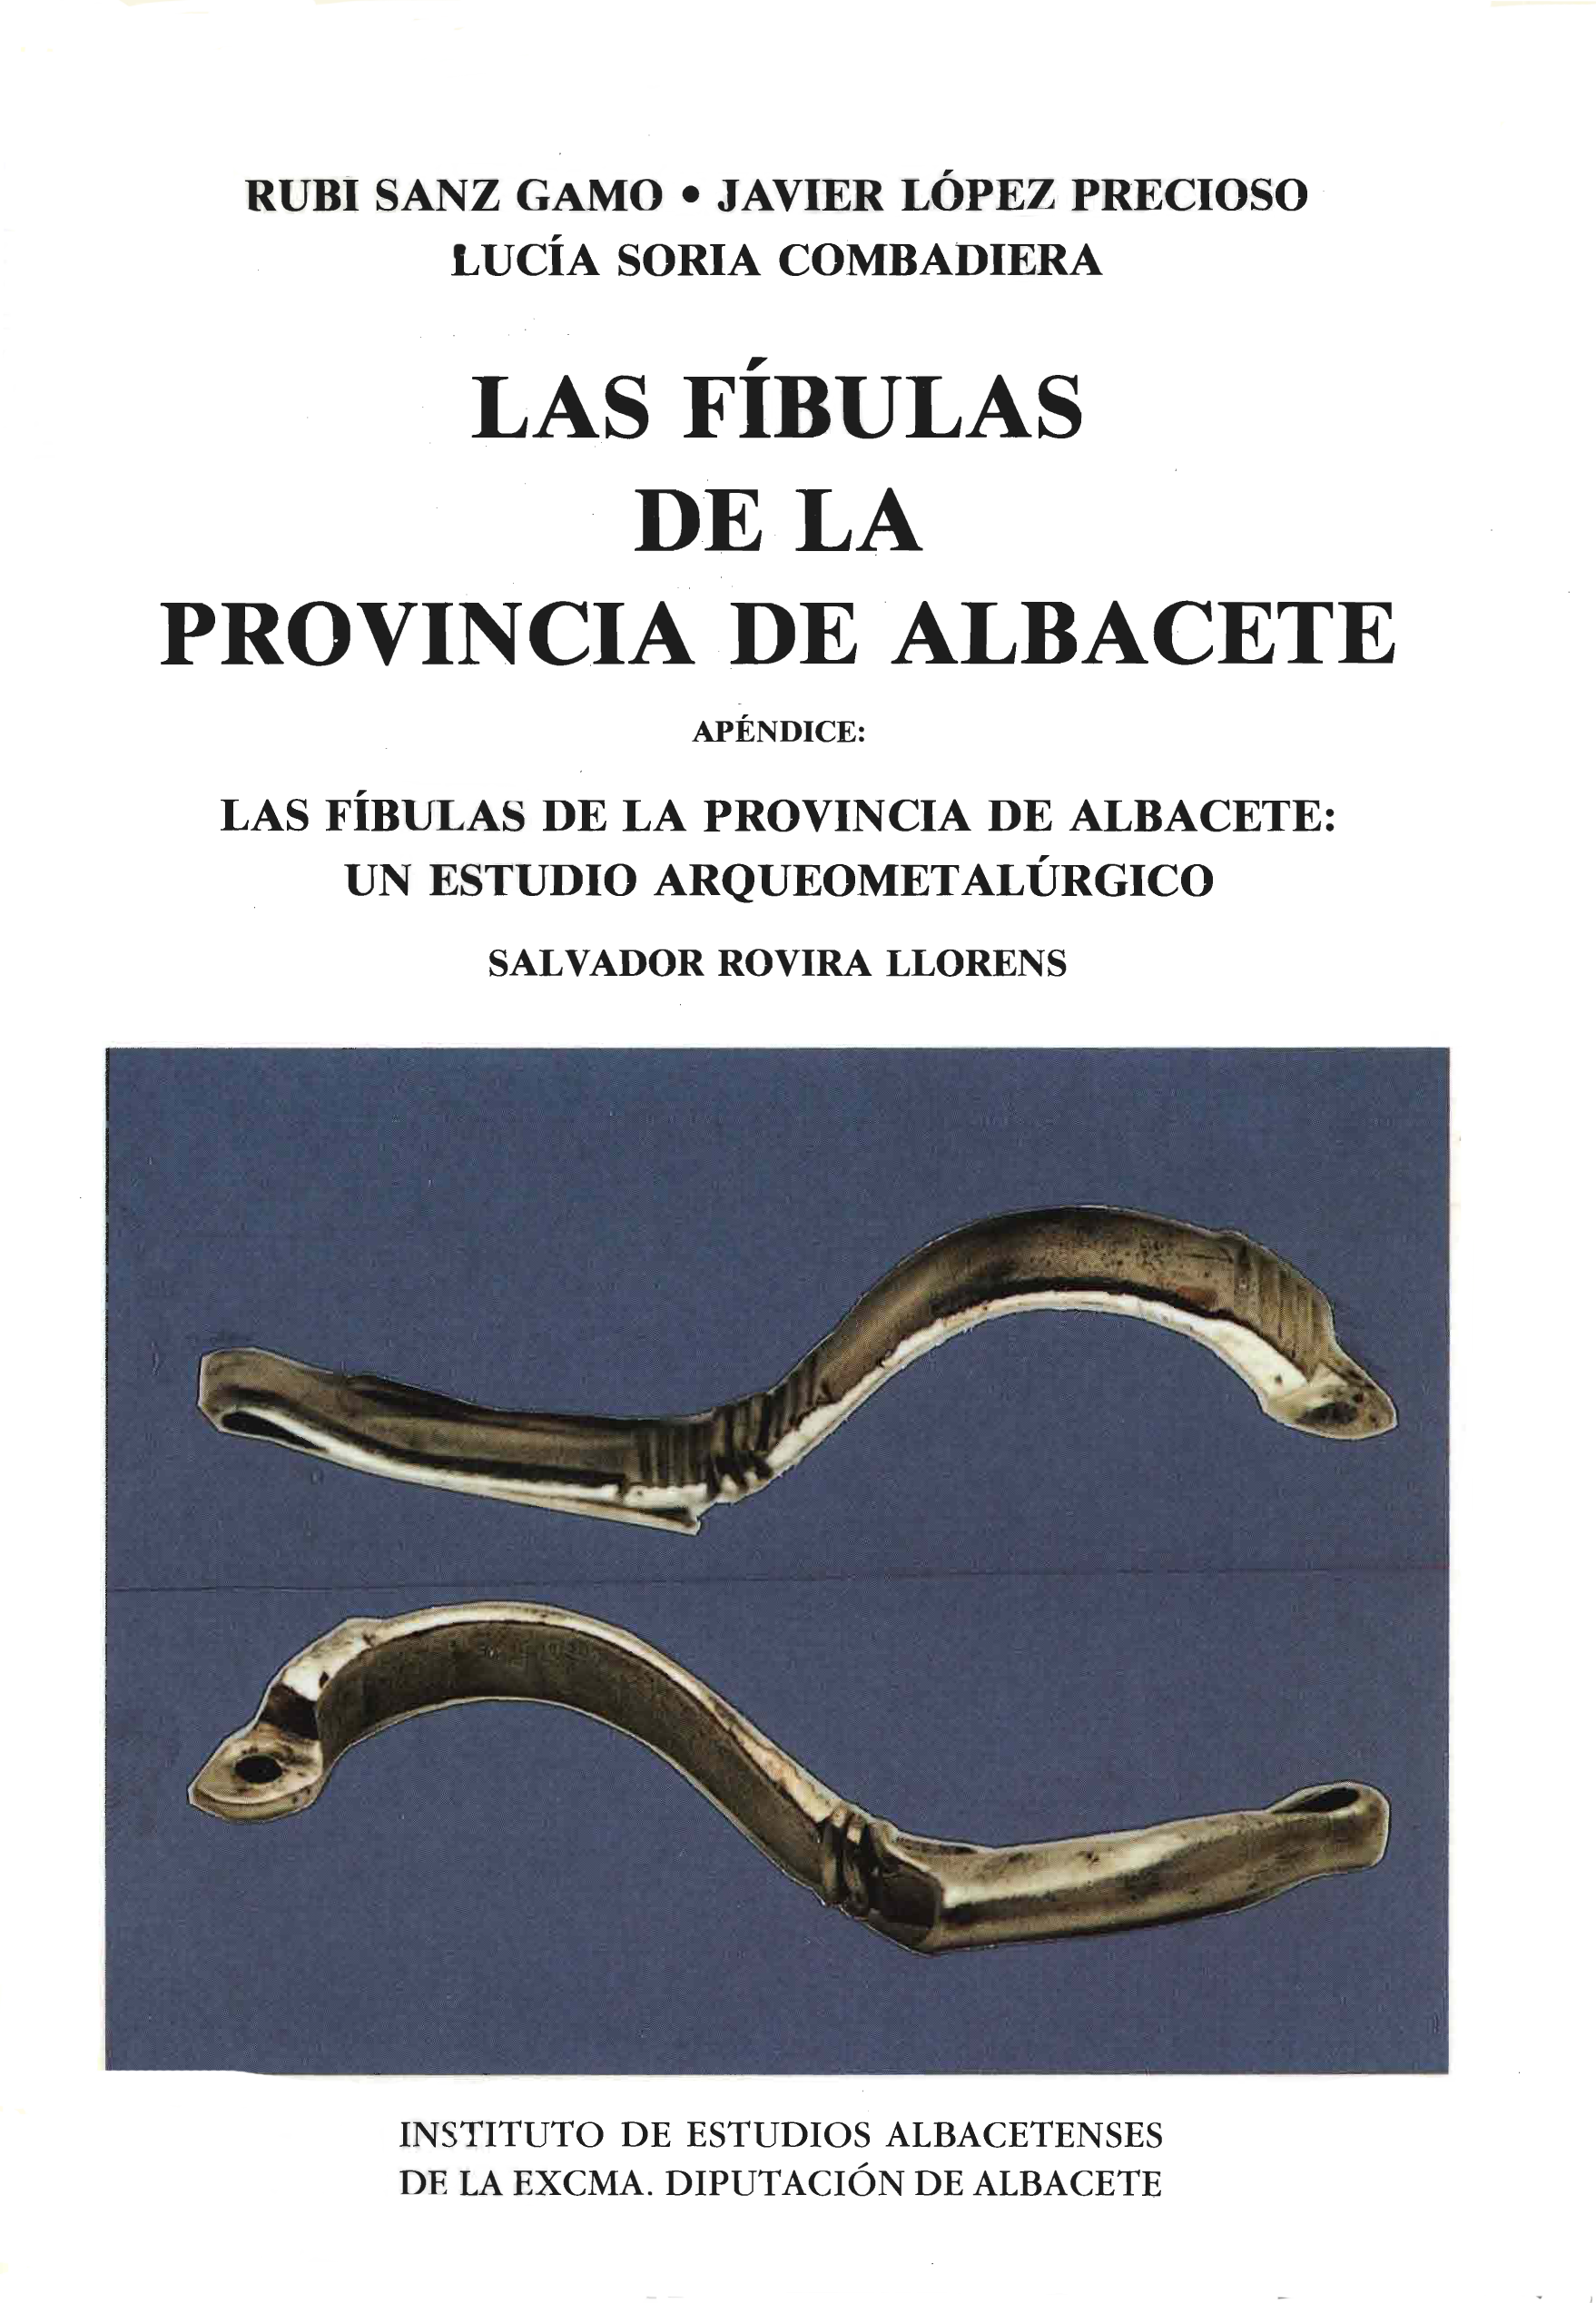 Imagen de portada del libro Las fíbulas de la provincia de Albacete